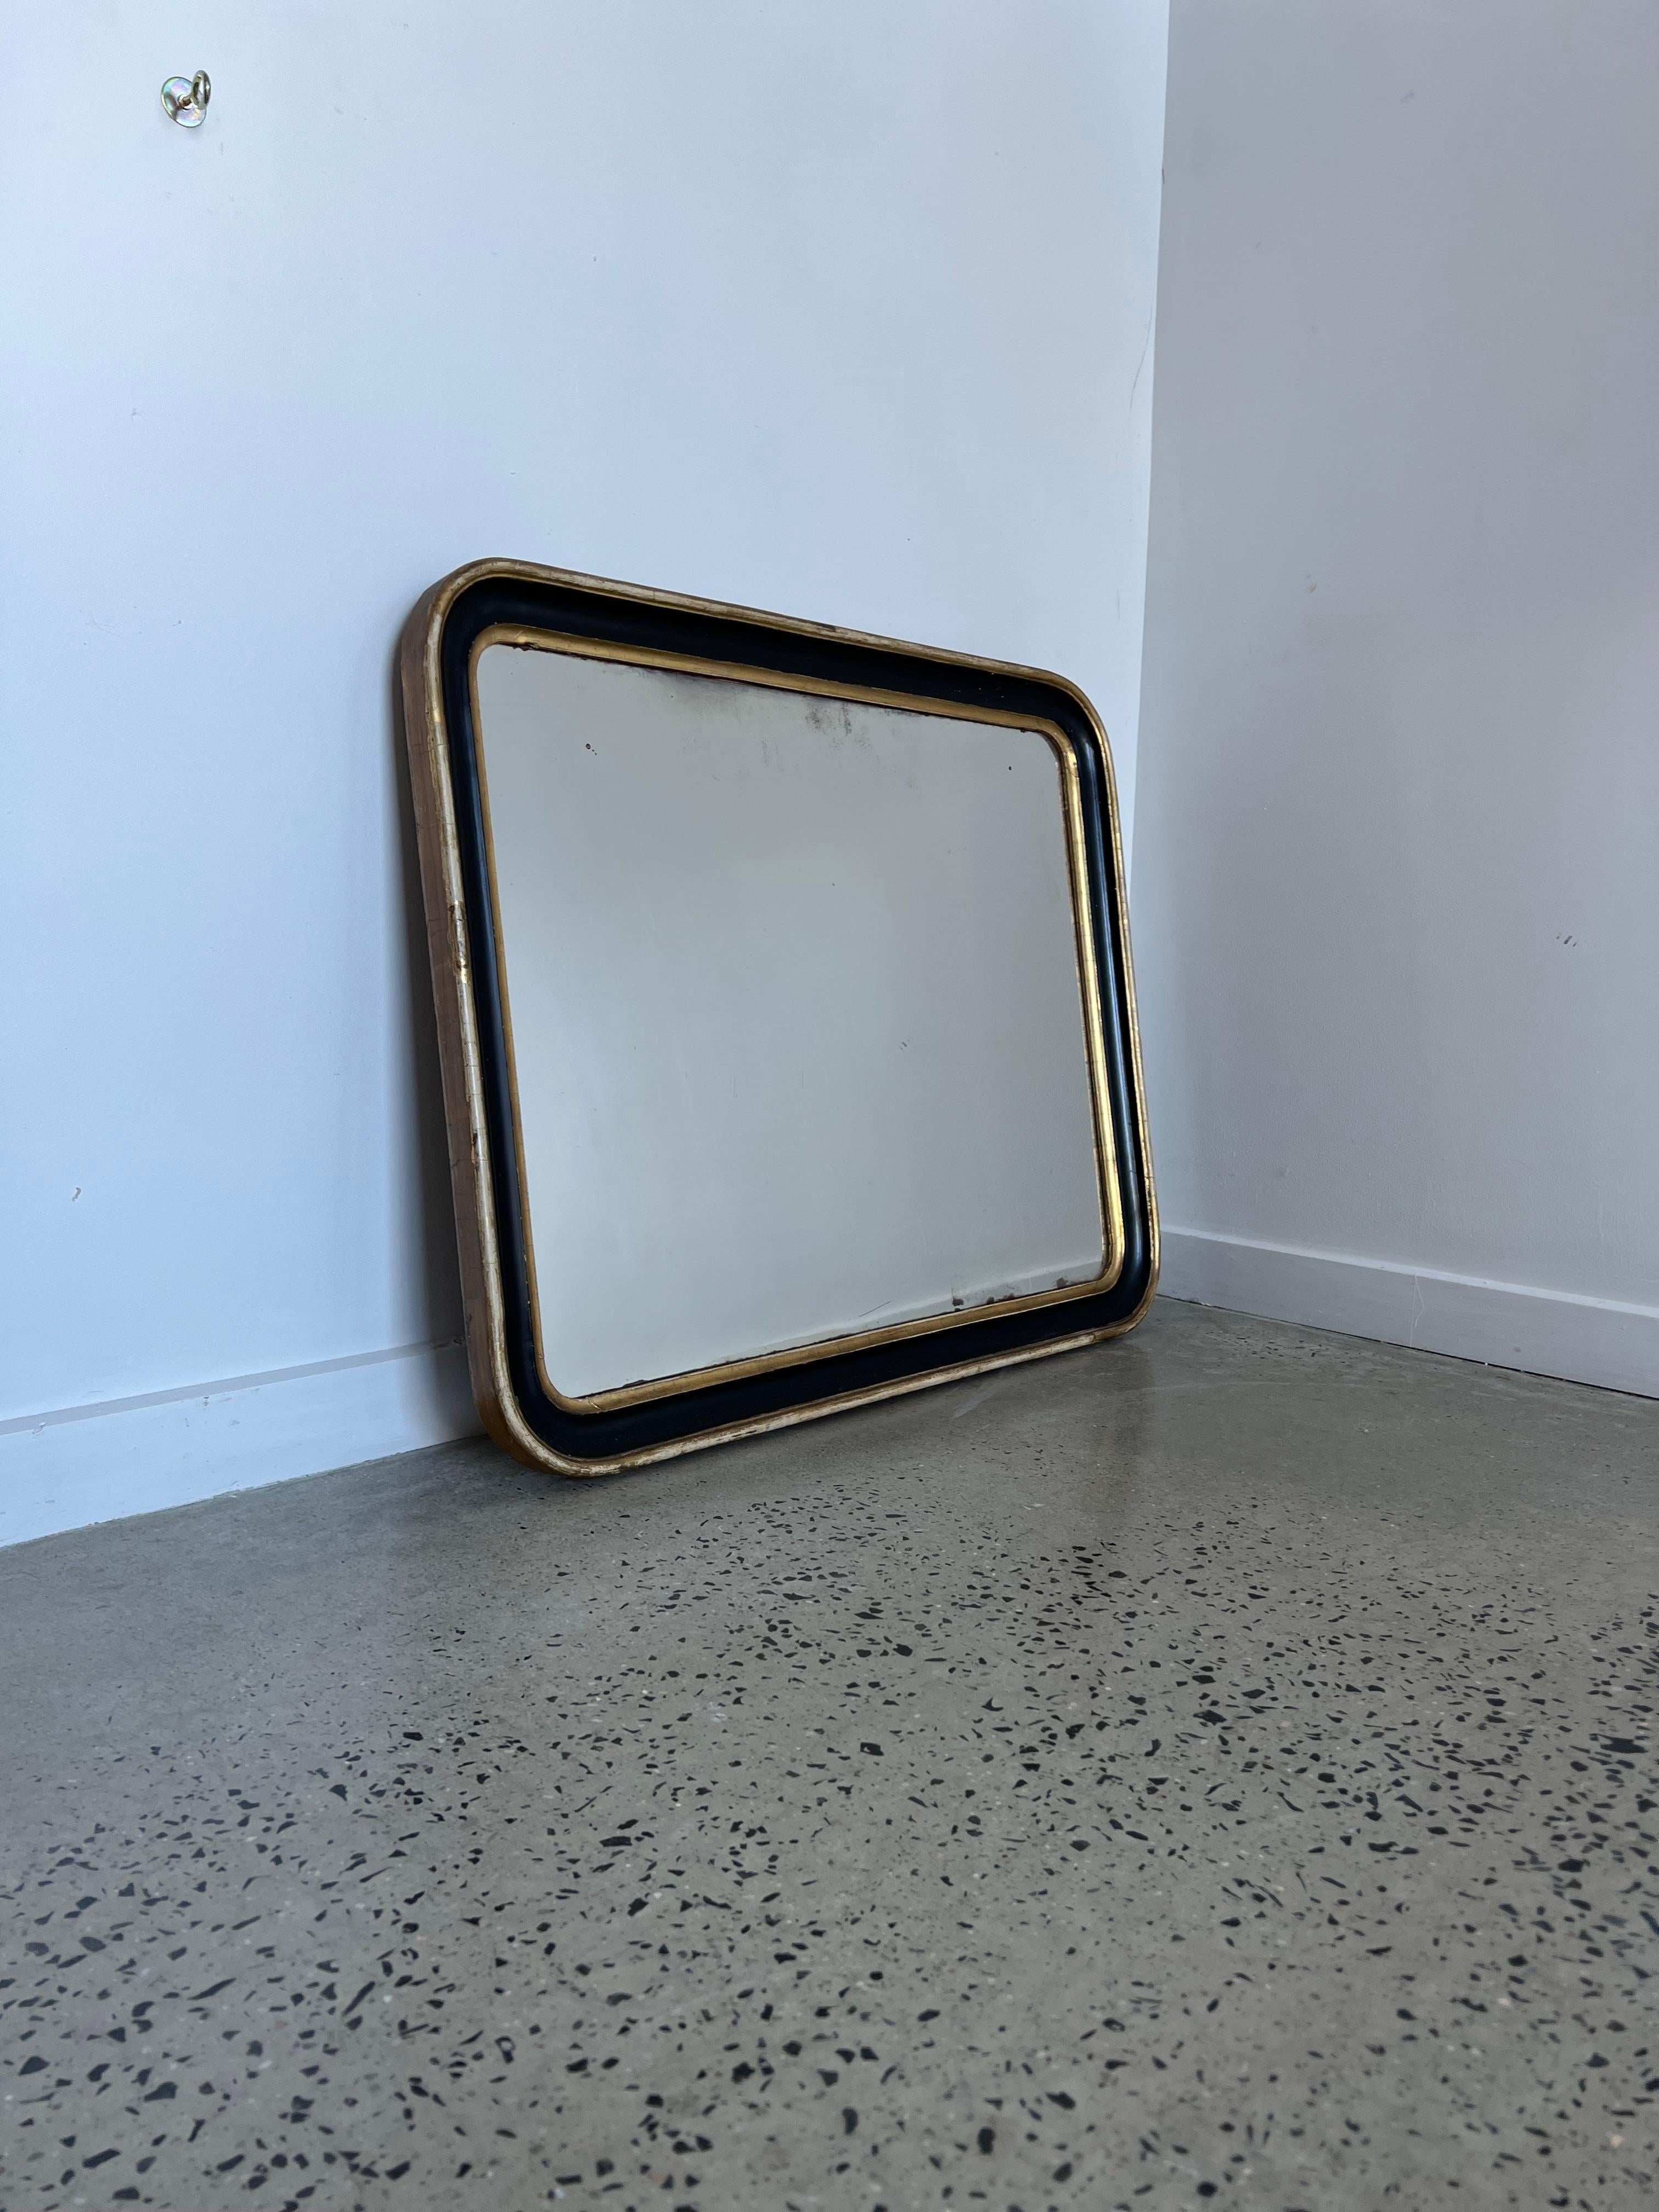 Italienischer Mid-Century Modern Spiegel aus Blattgold aus den 1940er Jahren.
Schöne rechteckige Spiegel, der Rahmen ist in schwarz und Blattgold Technik entlang der Kanten gemalt.
 